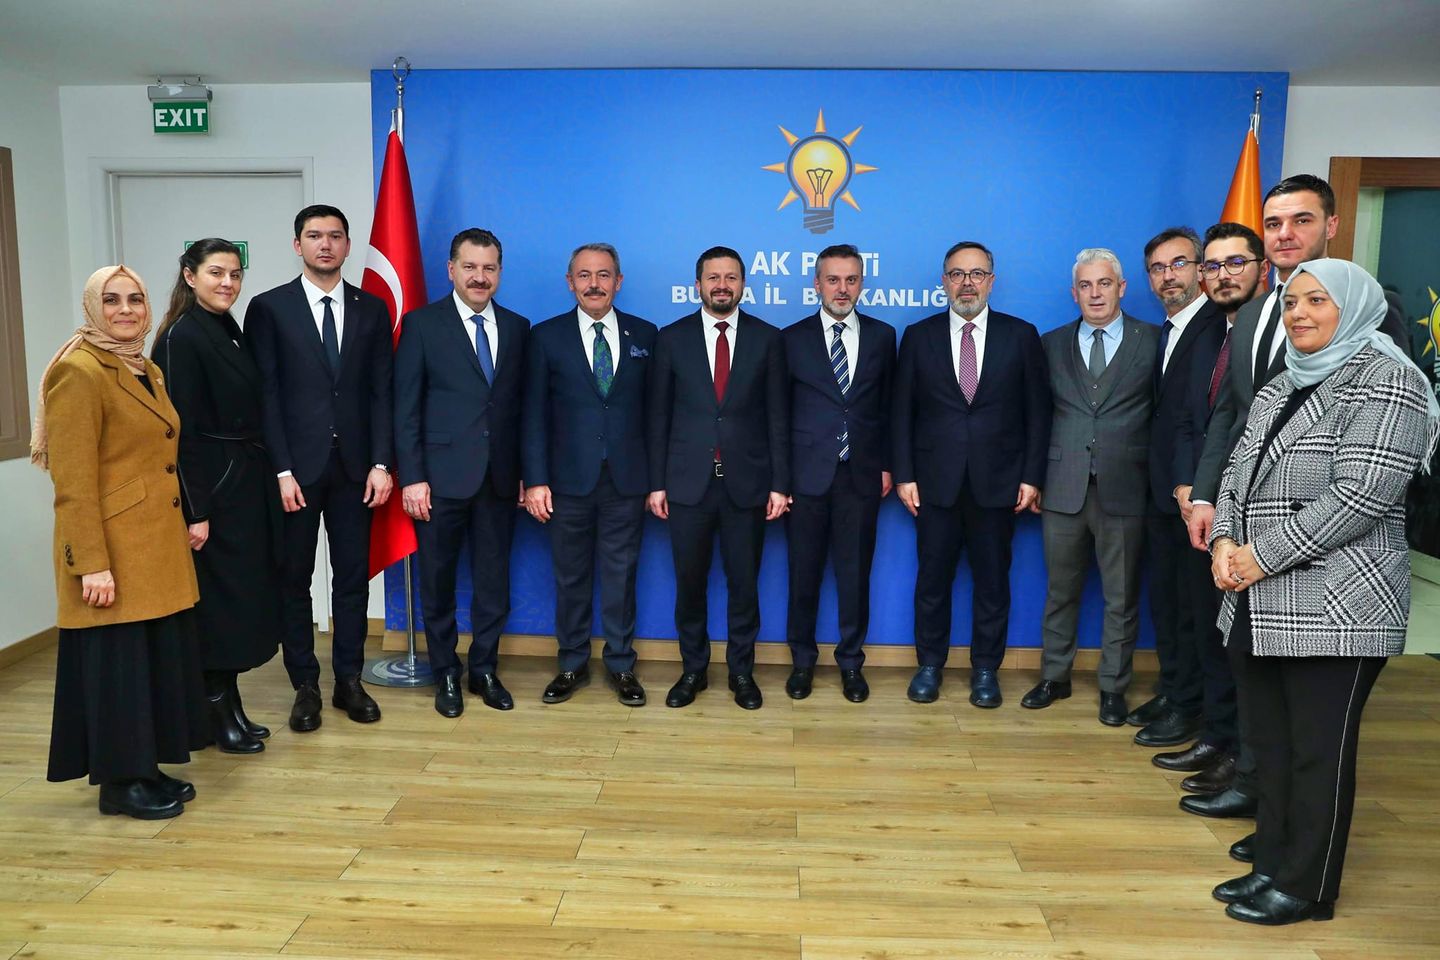 AK Parti Balıkesir İl Teşkilatı, Altıeylül, Bigadiç ve Dursunbey ilçelerine yeni ilçe başkanları atadı.